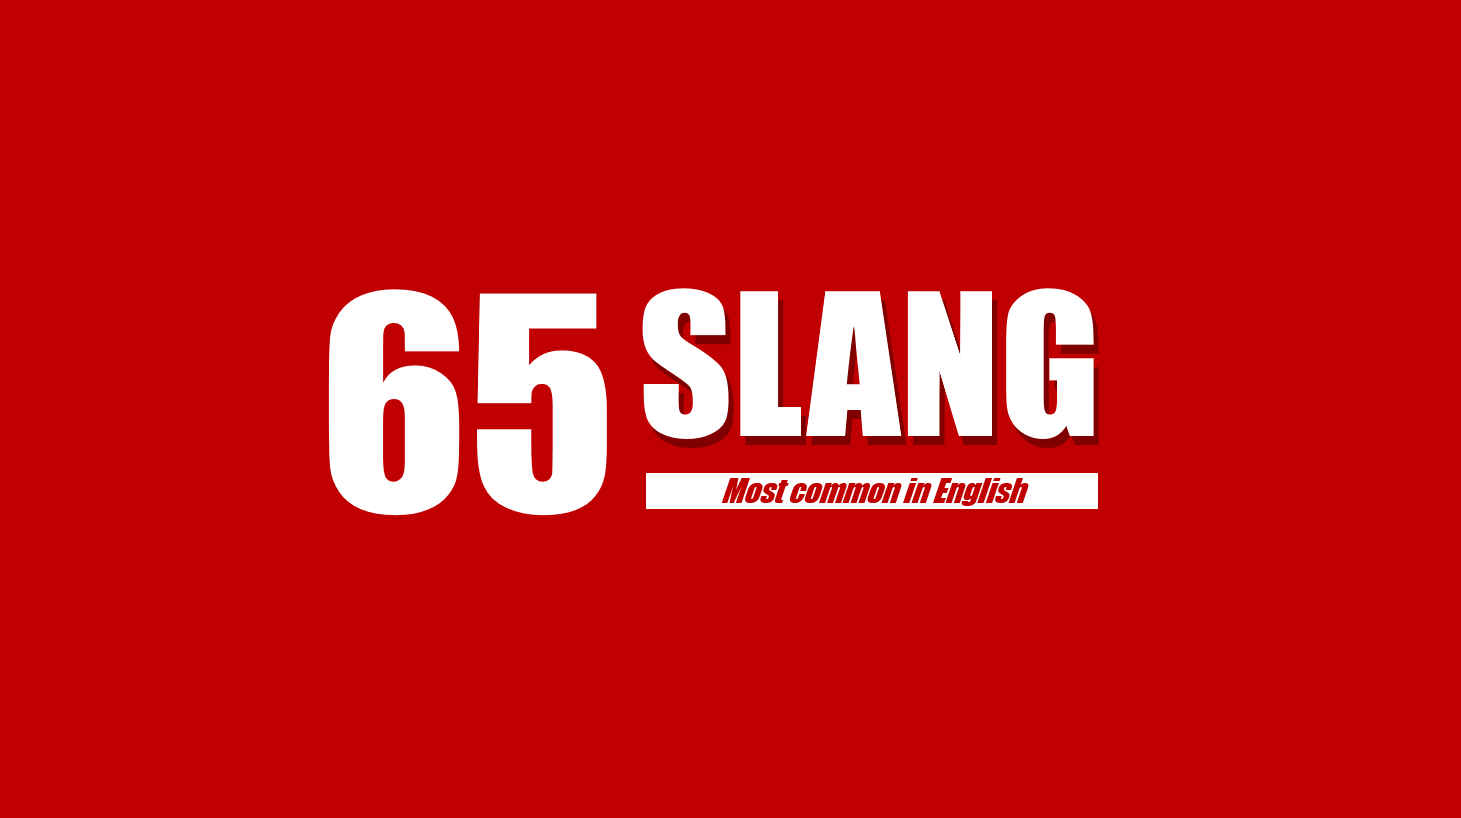 Học nhanh 65 cụm từ lóng giúp bạn nói tiếng Anh chuẩn bản xứ - LangGo